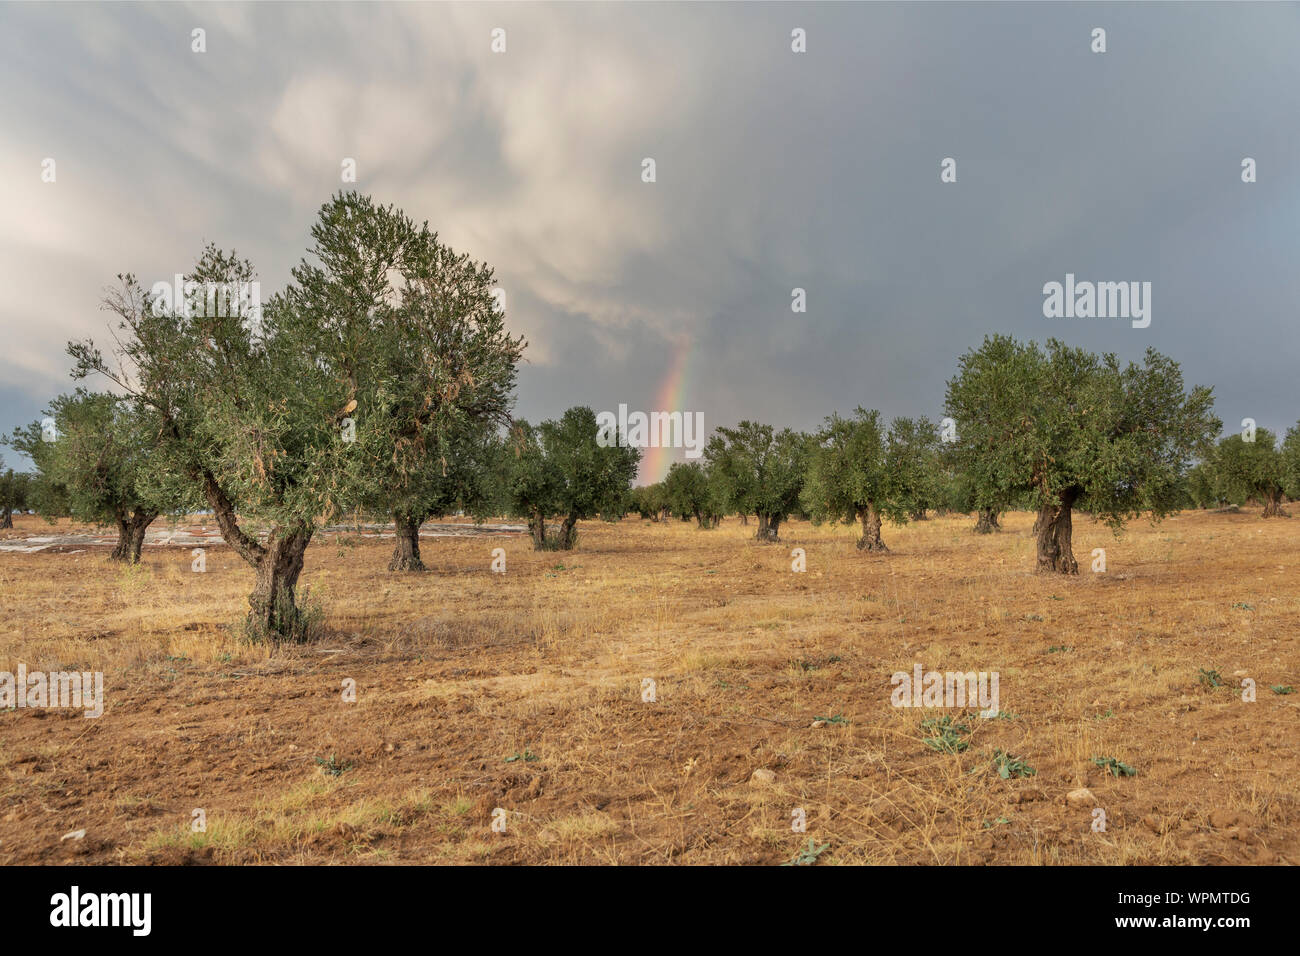 Rainbow over an olive grove Stock Photo